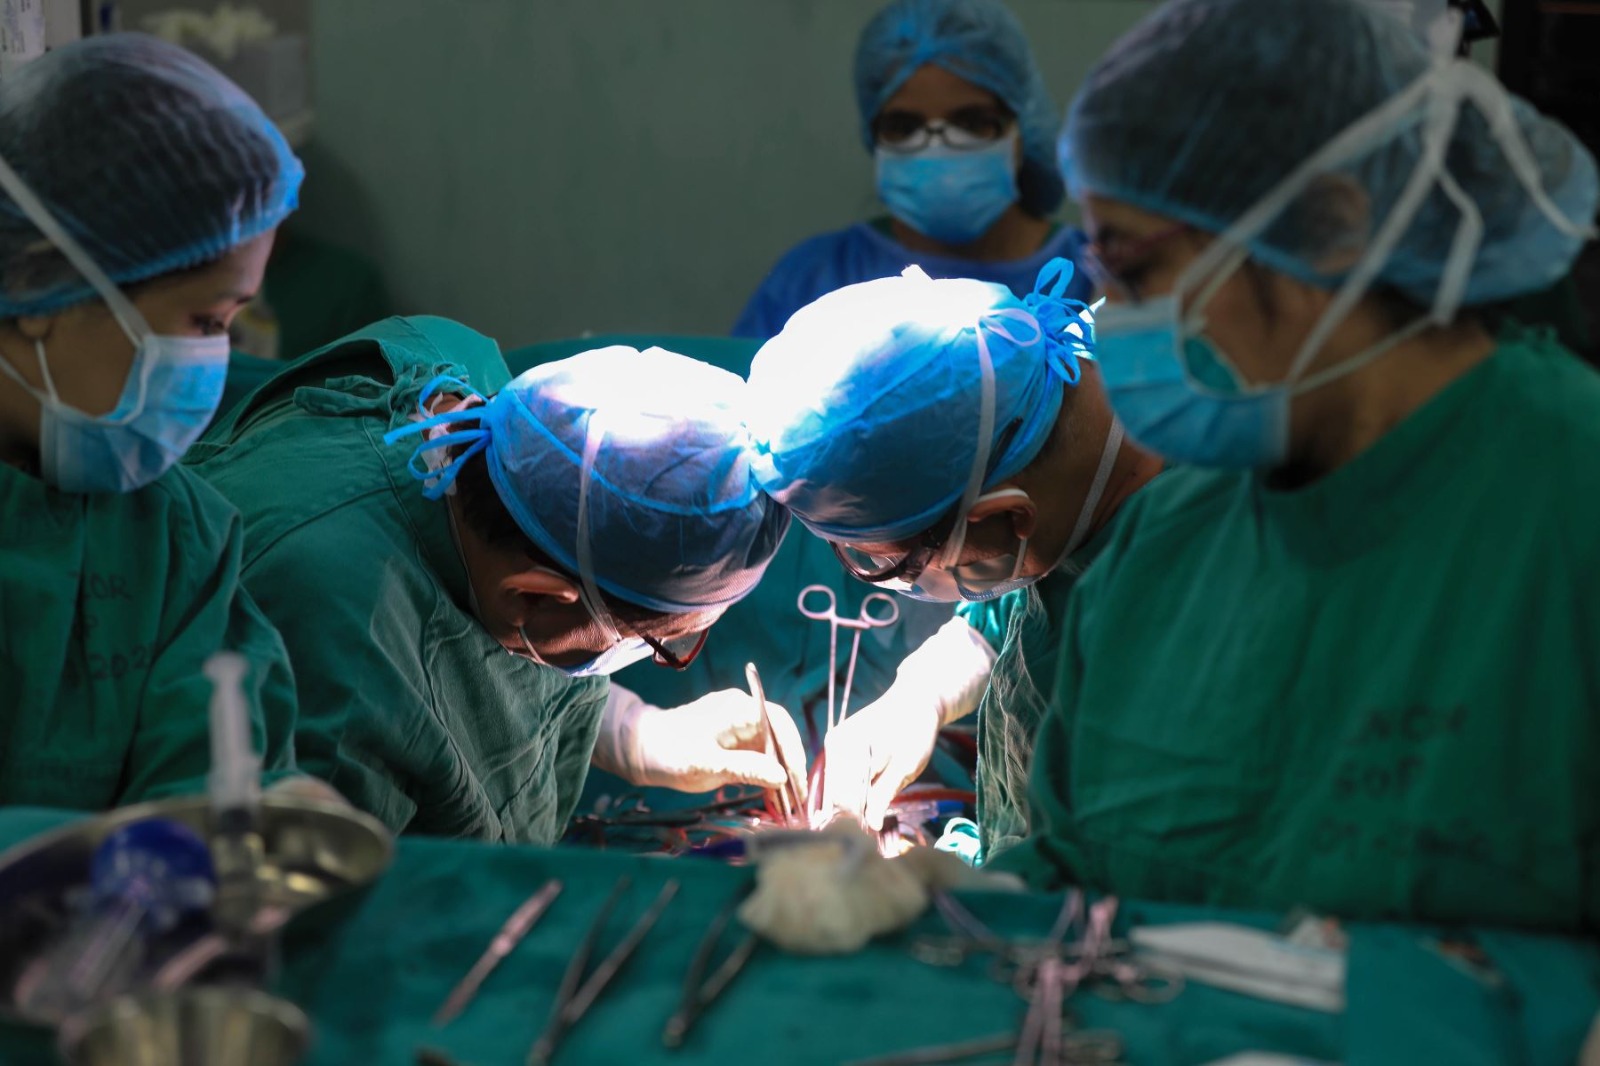 Paciente muerto por golpe en cabeza dona sus órganos y salva cinco vidas